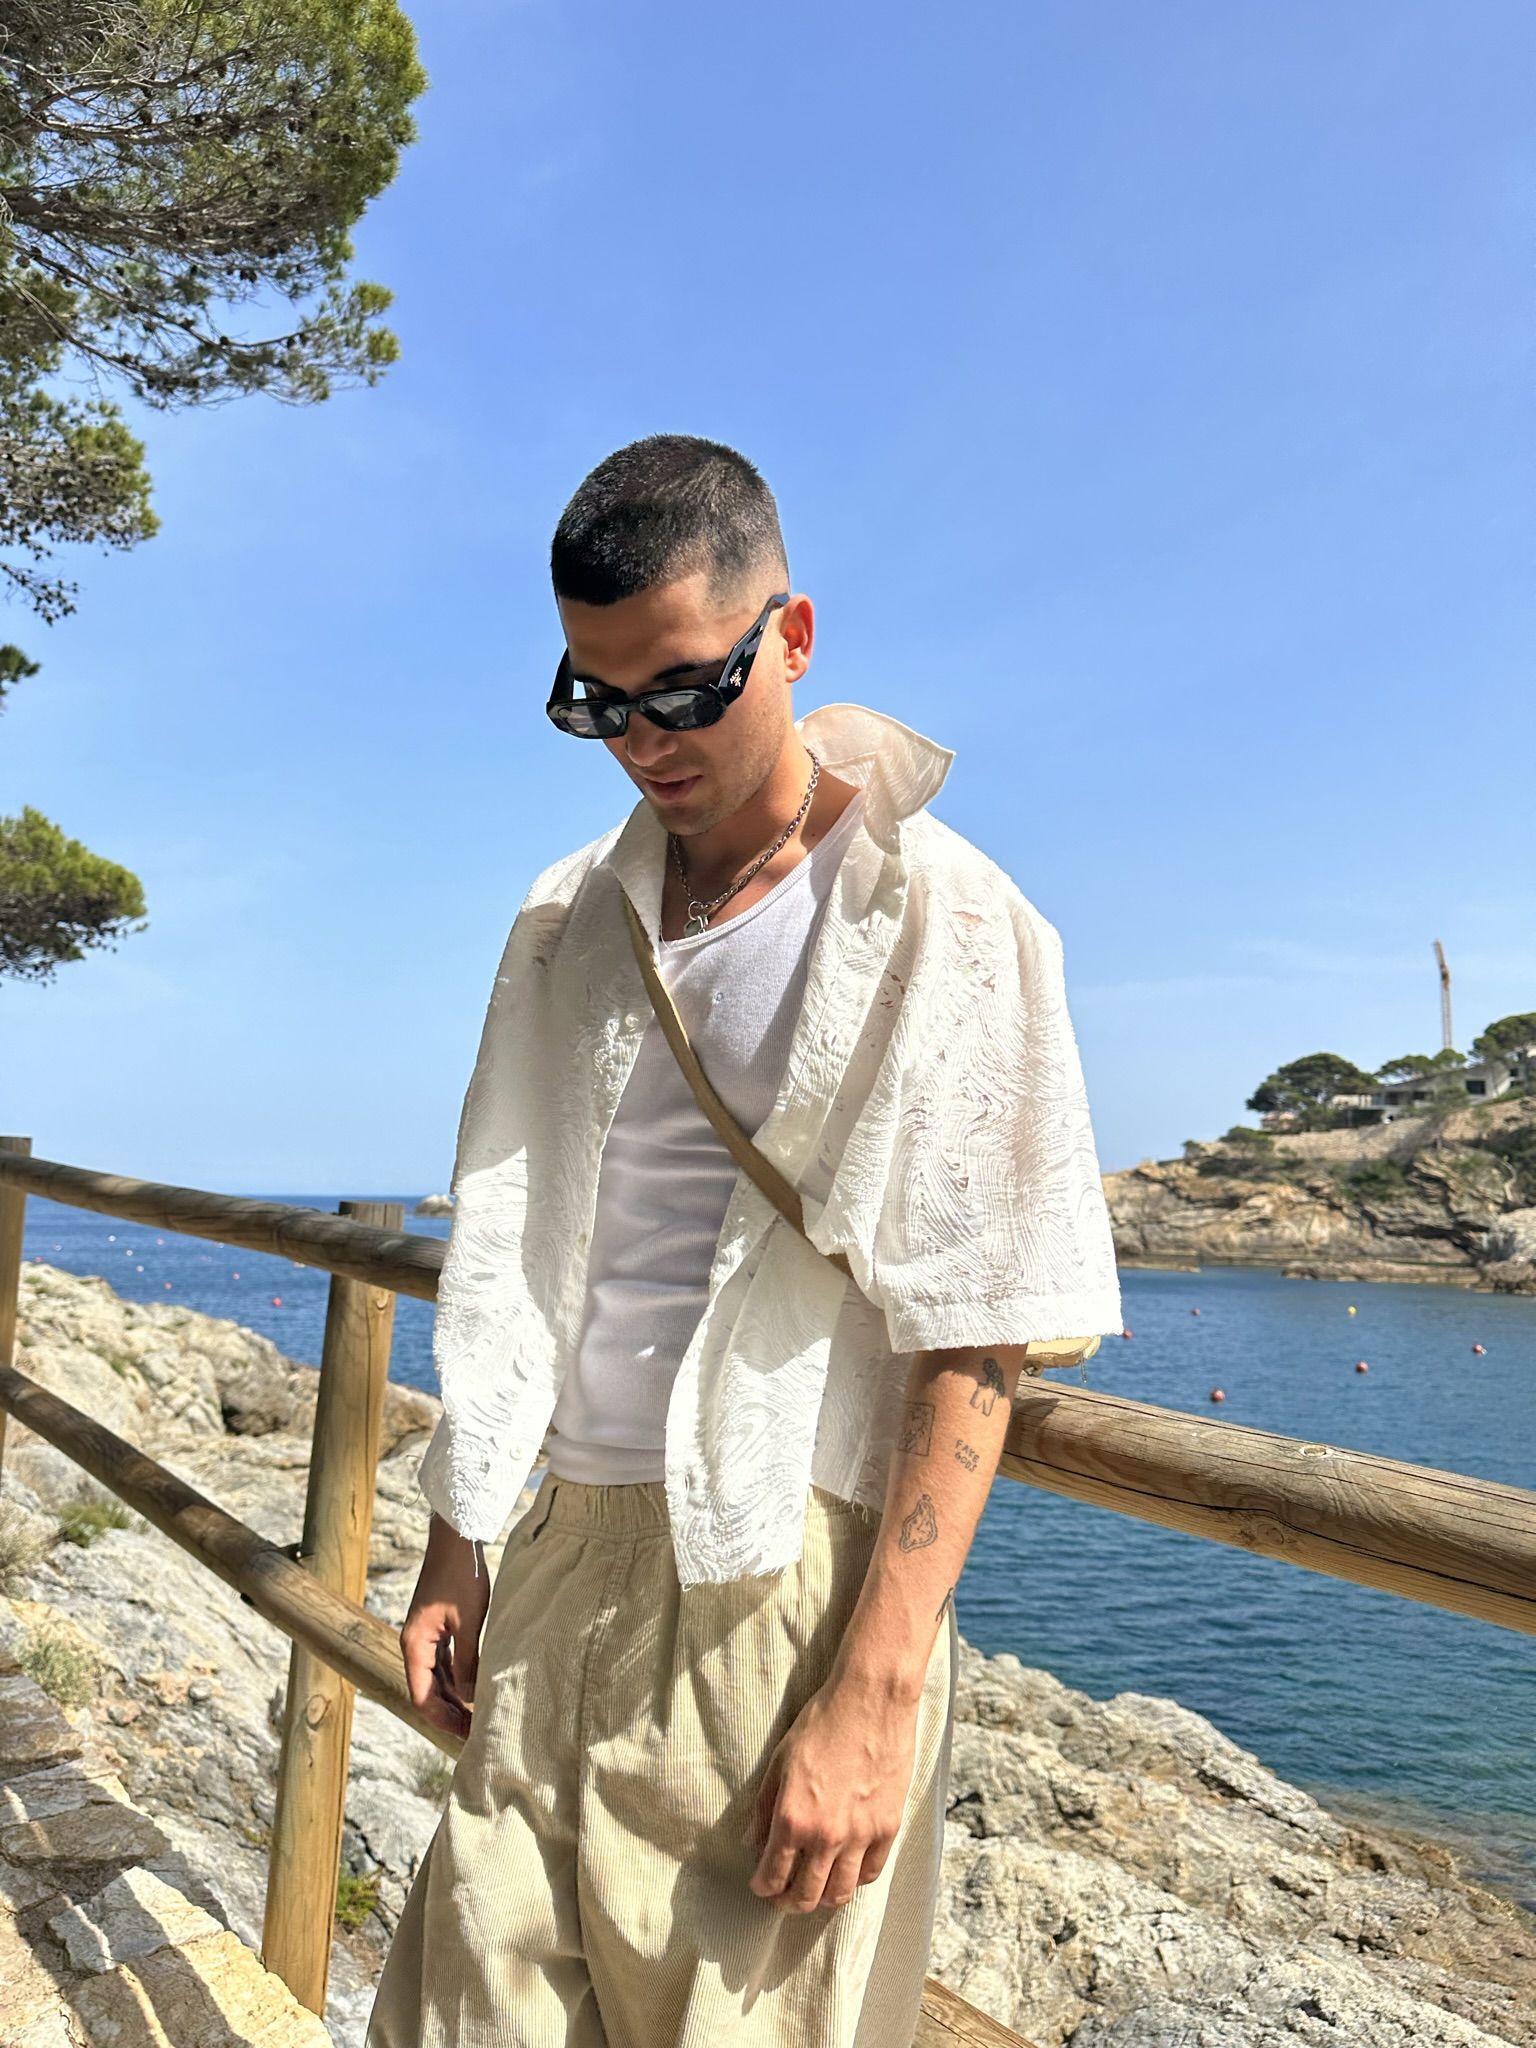 Louis Vuitton celebra el verano con una pop-up en Ibiza